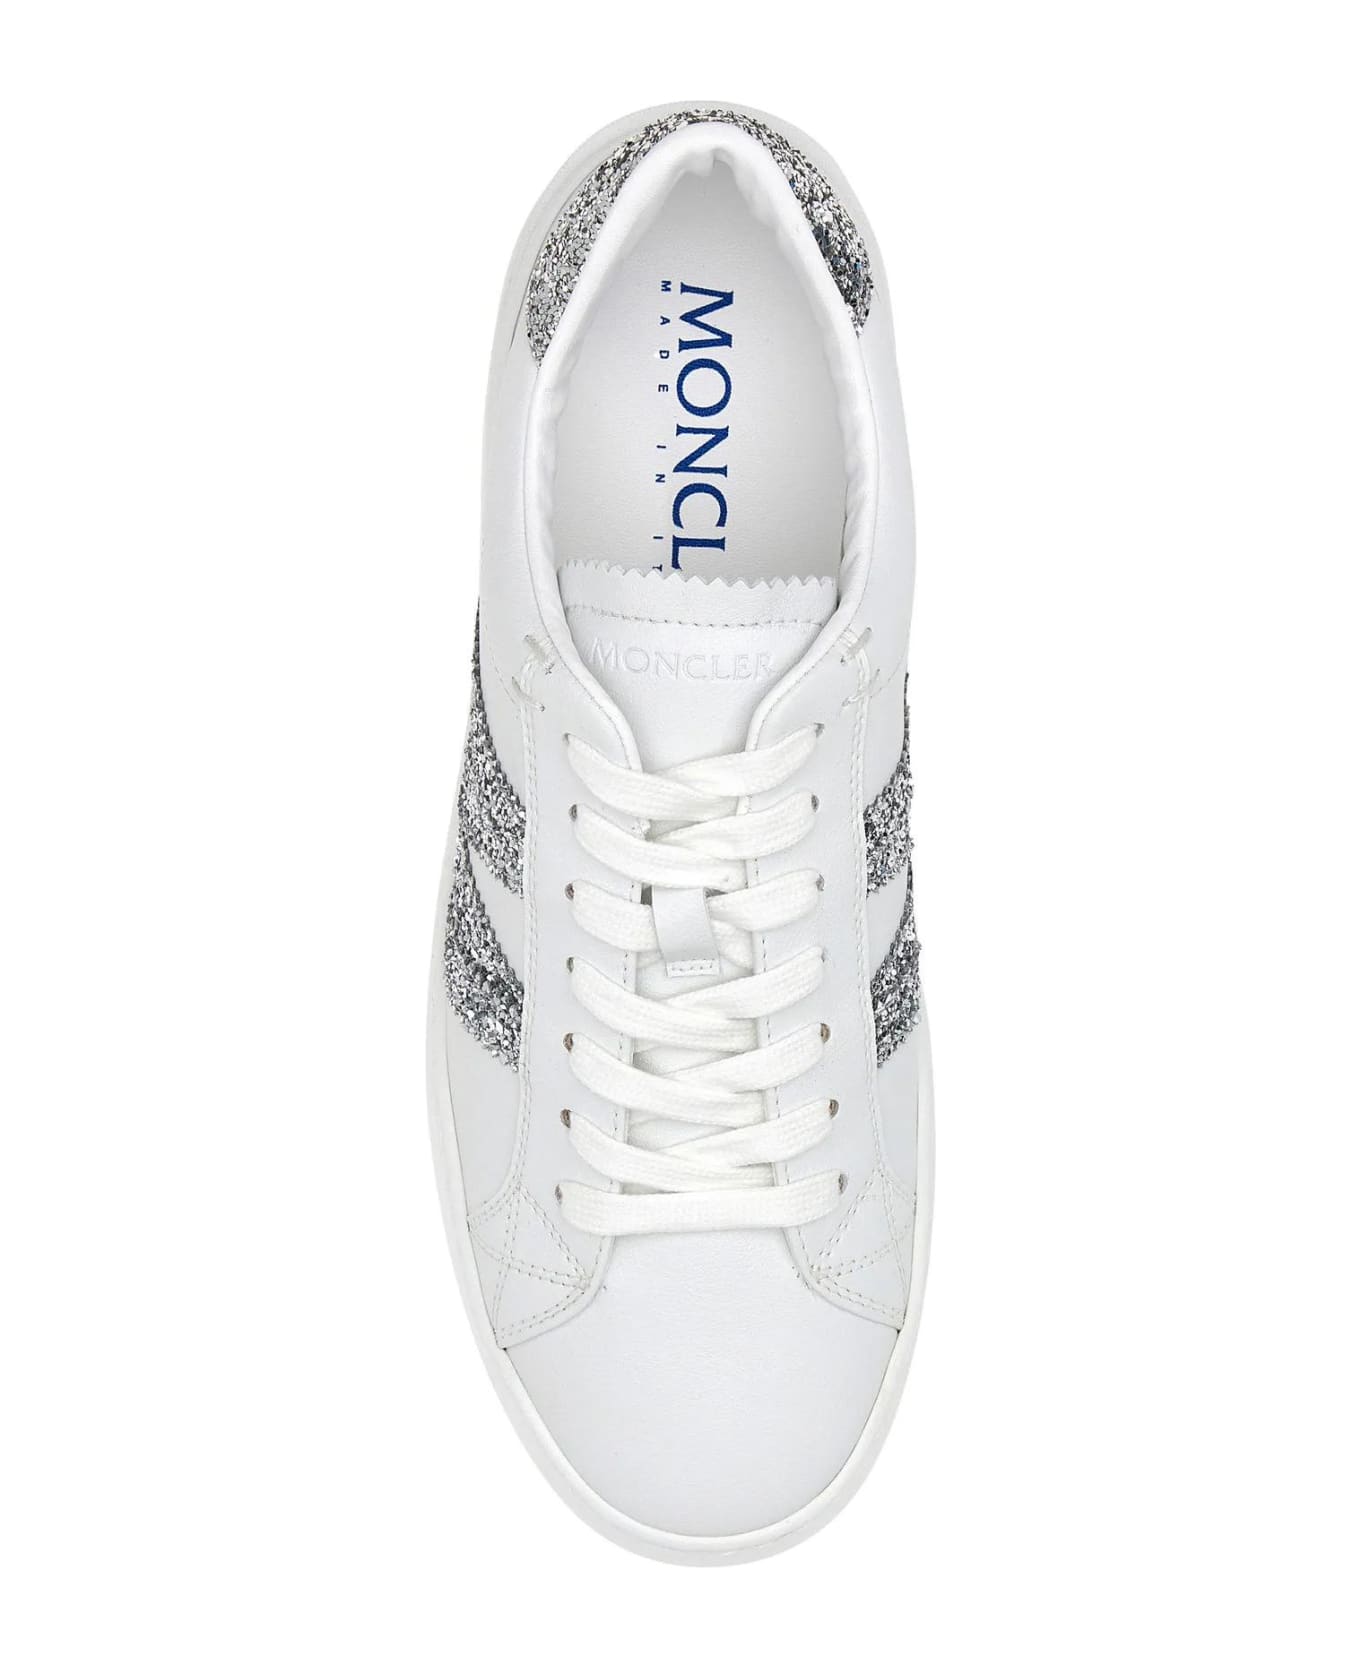 Moncler White Leather Monaco M Sneakers - White